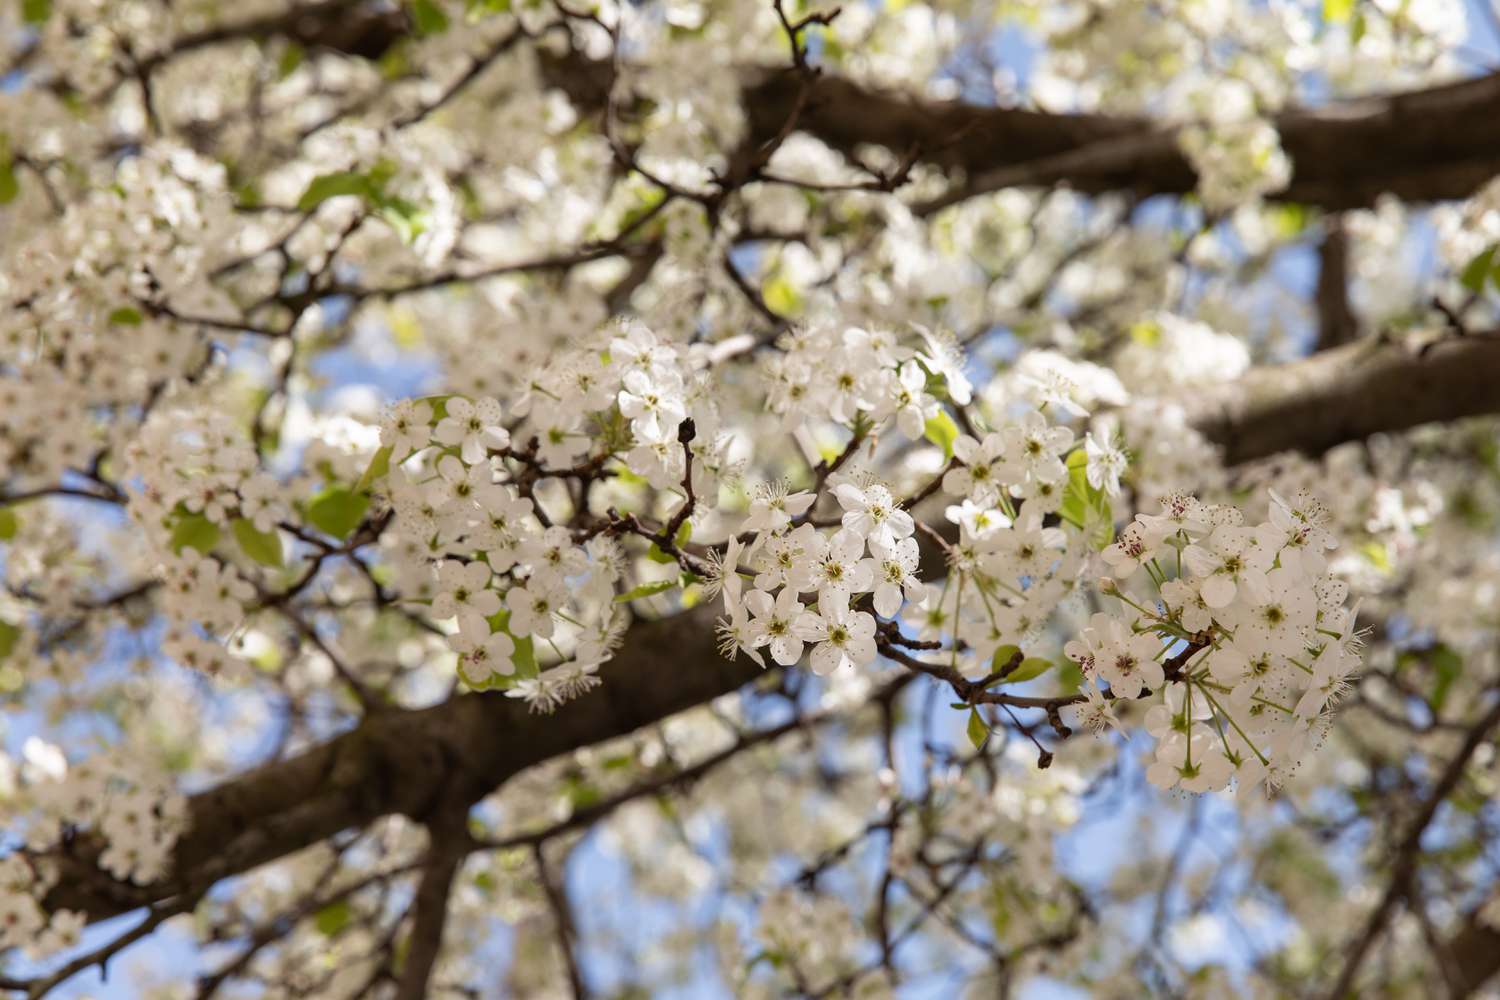 Kalley-Birnenbaumzweig mit kleinen weißen Blüten in Nahaufnahme